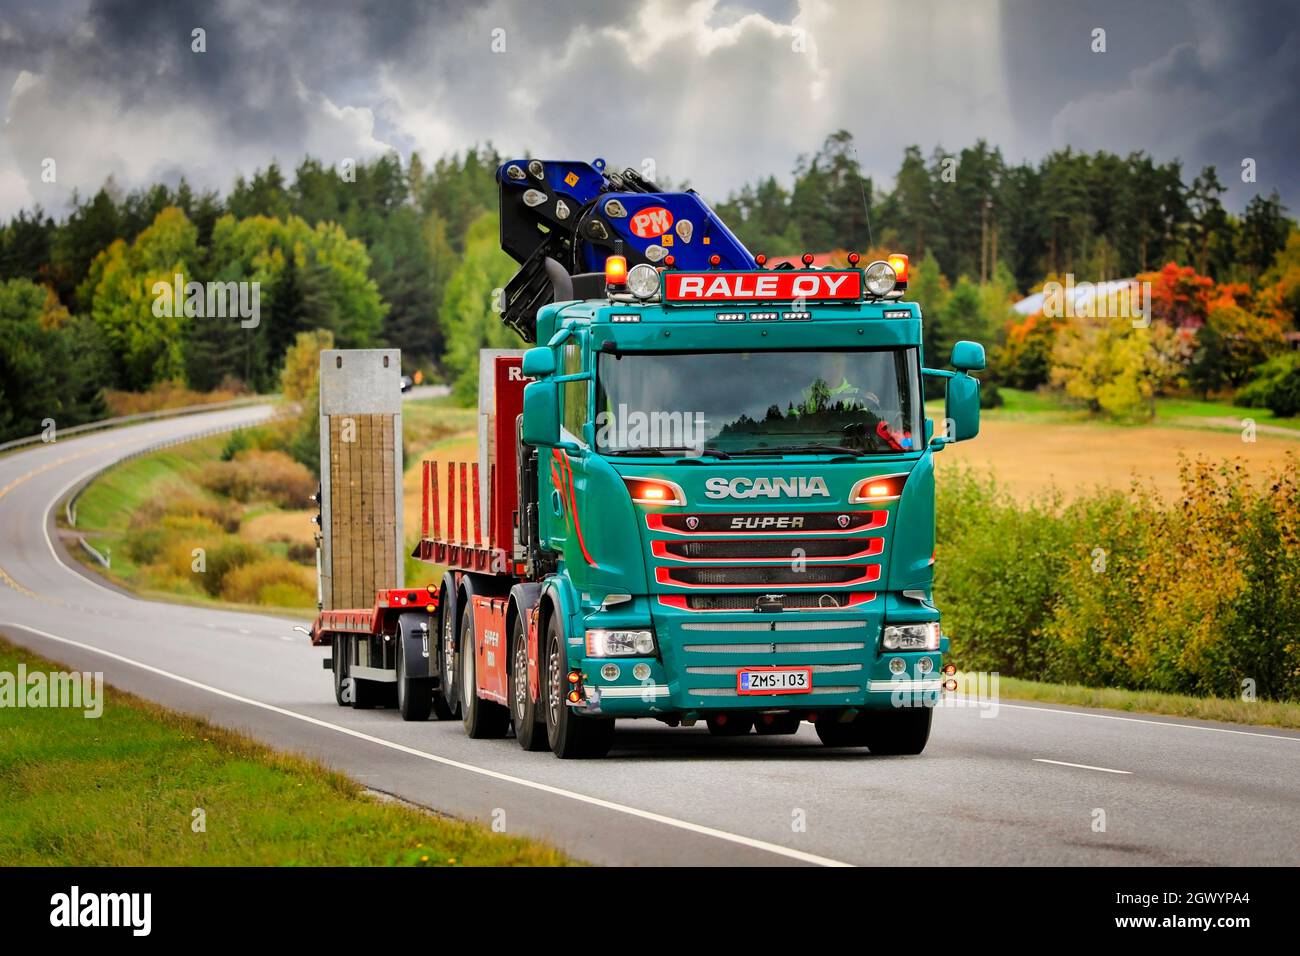 Il camion verde personalizzato Scania Rale Oy con gru montata su camion tira il rimorchio su strada 52 in una giornata nuvolosa di autunno. Salo, Finlandia. Settembre 23, 2021. Foto Stock